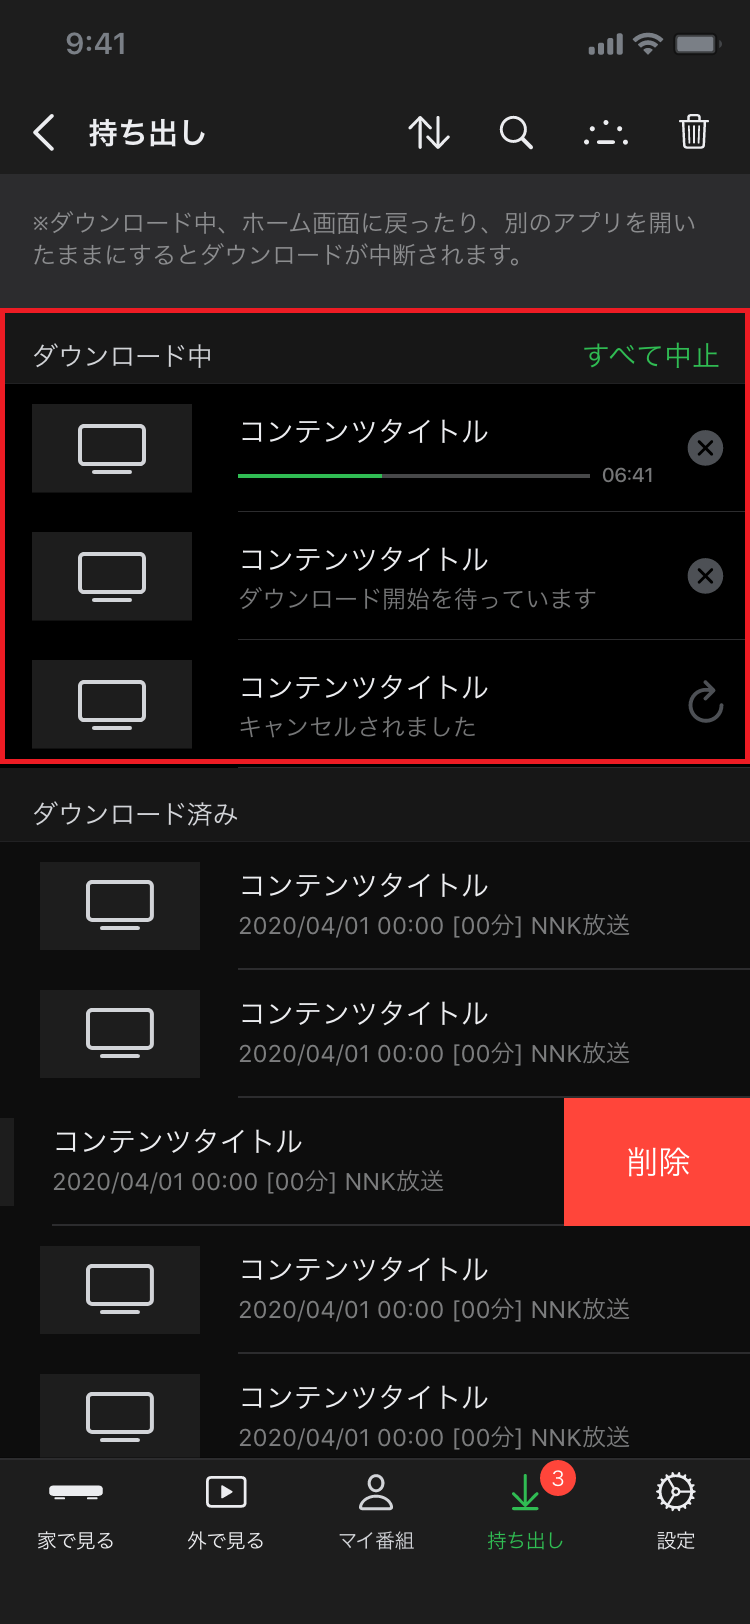 DiXiM Digital TV for iOS 持ち出しリスト